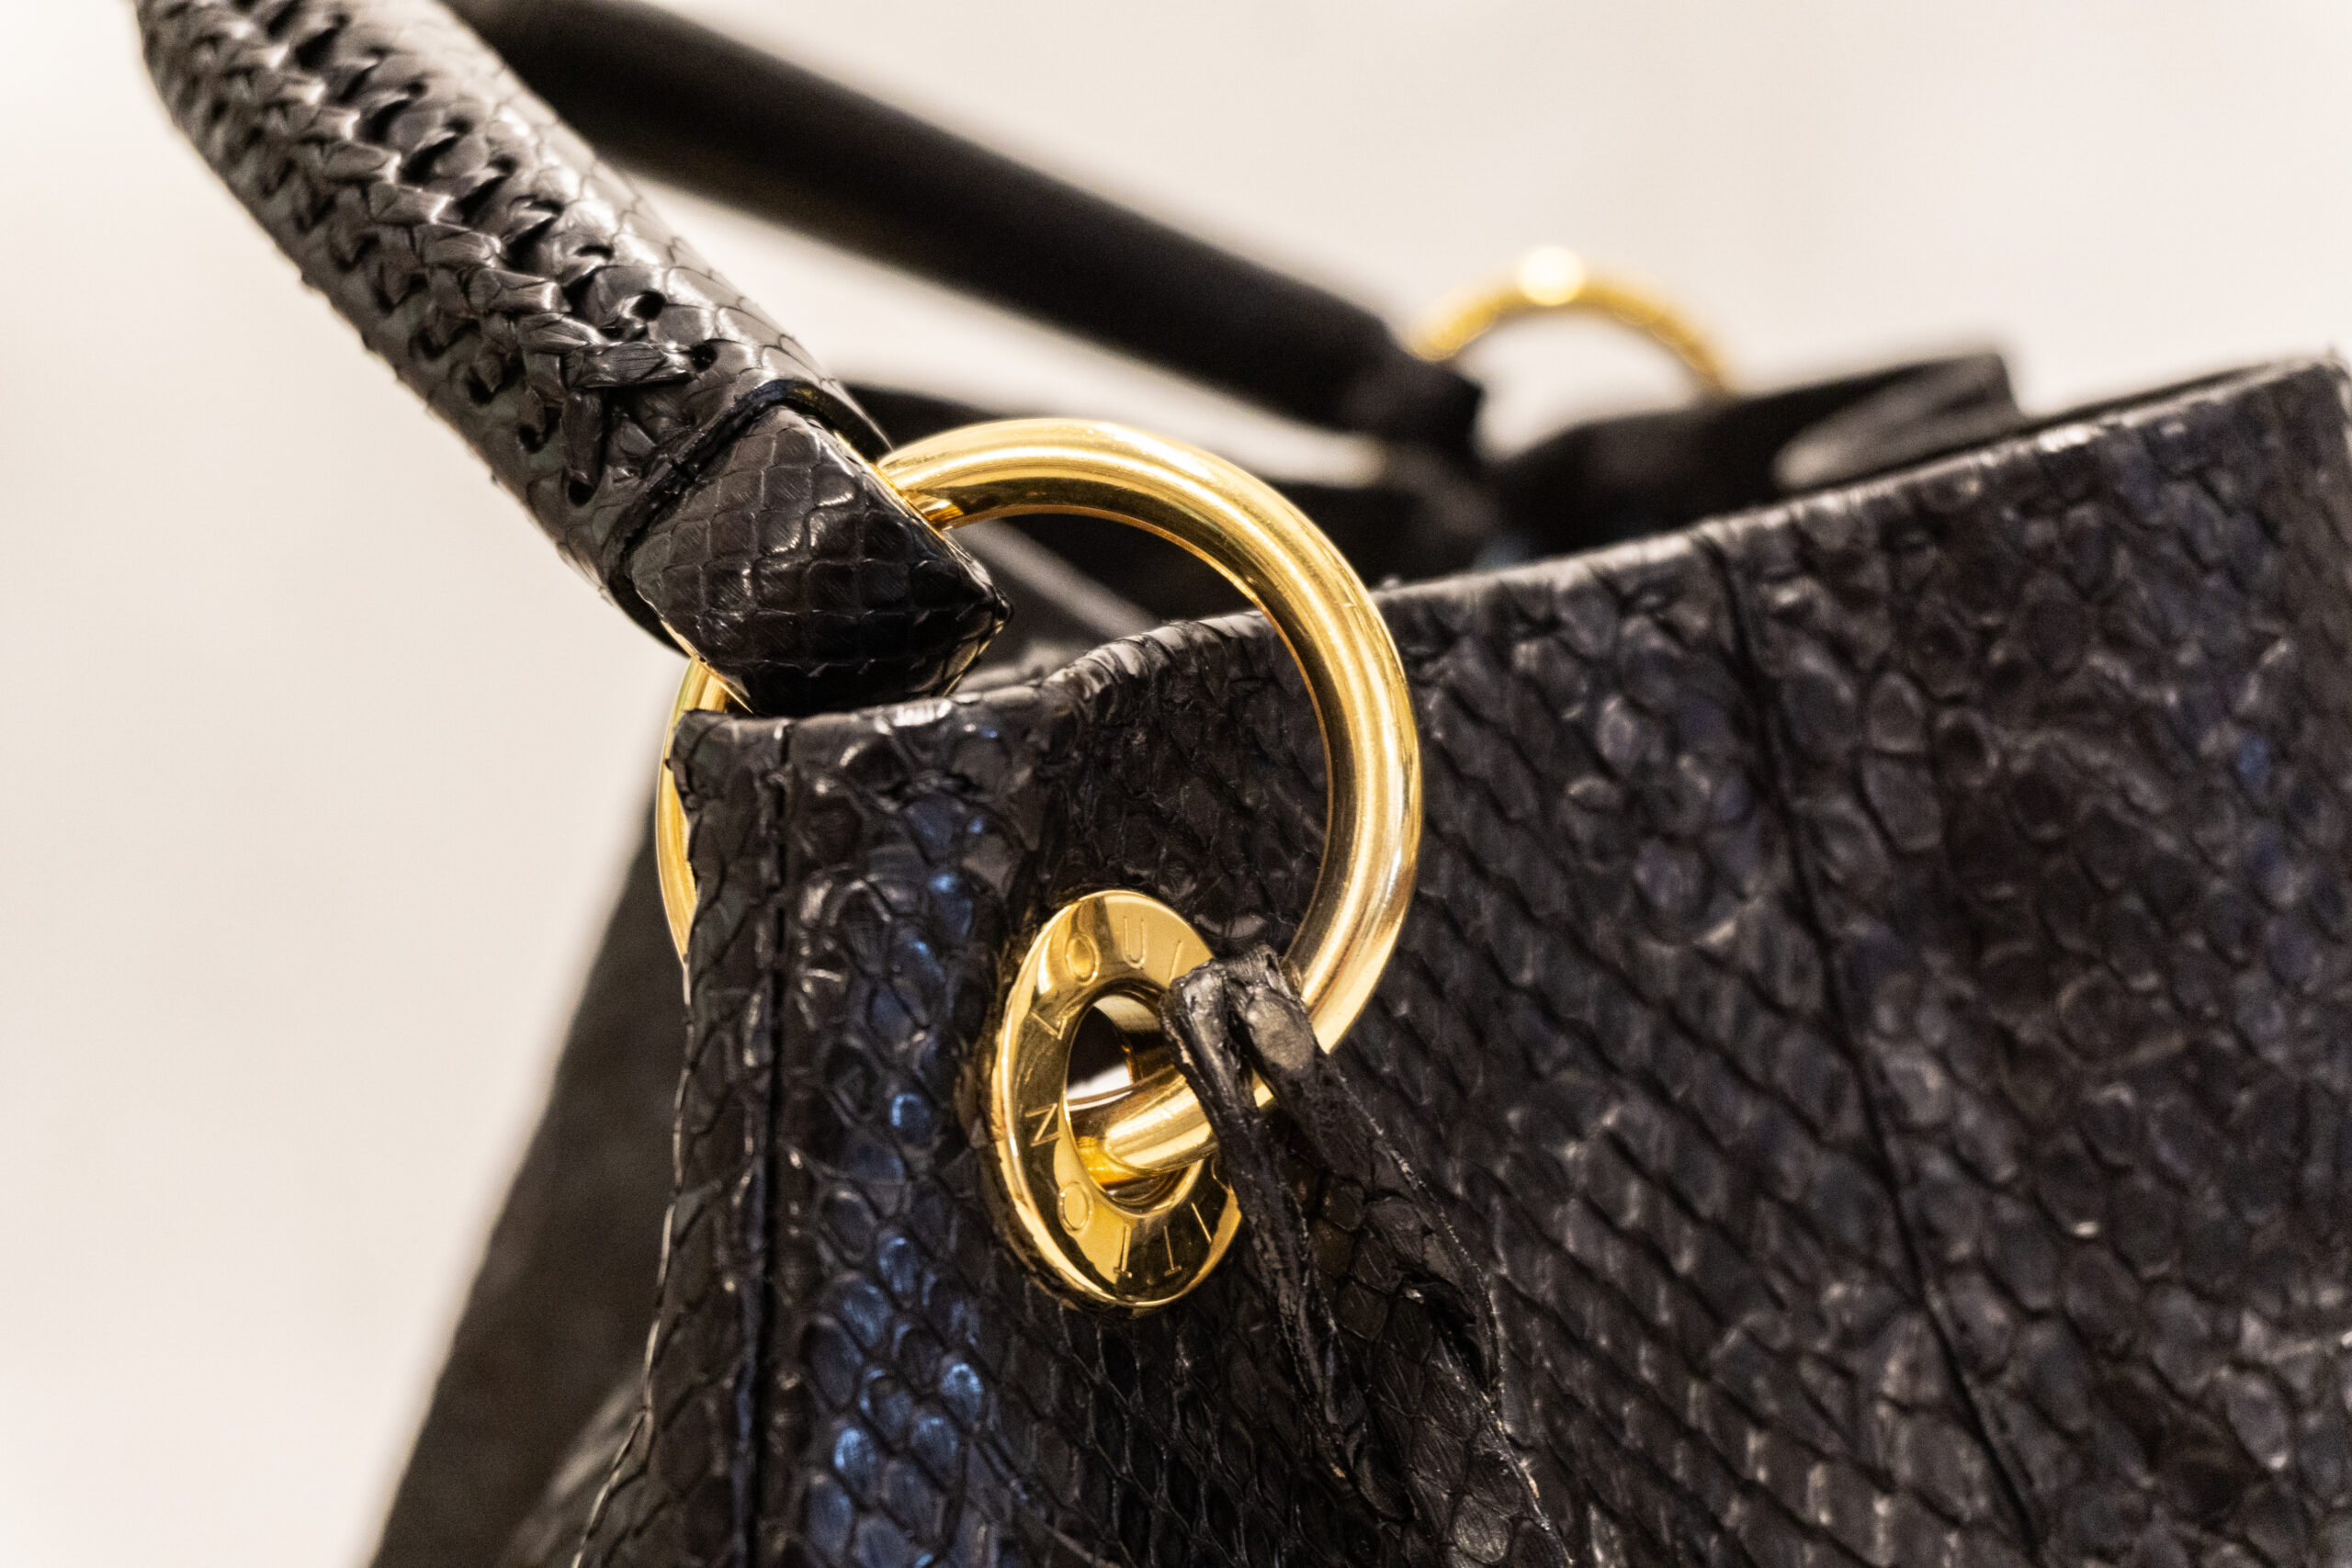 Louis Vuitton Damier artsy mm  Taschen, Handtaschen, Wolle kaufen